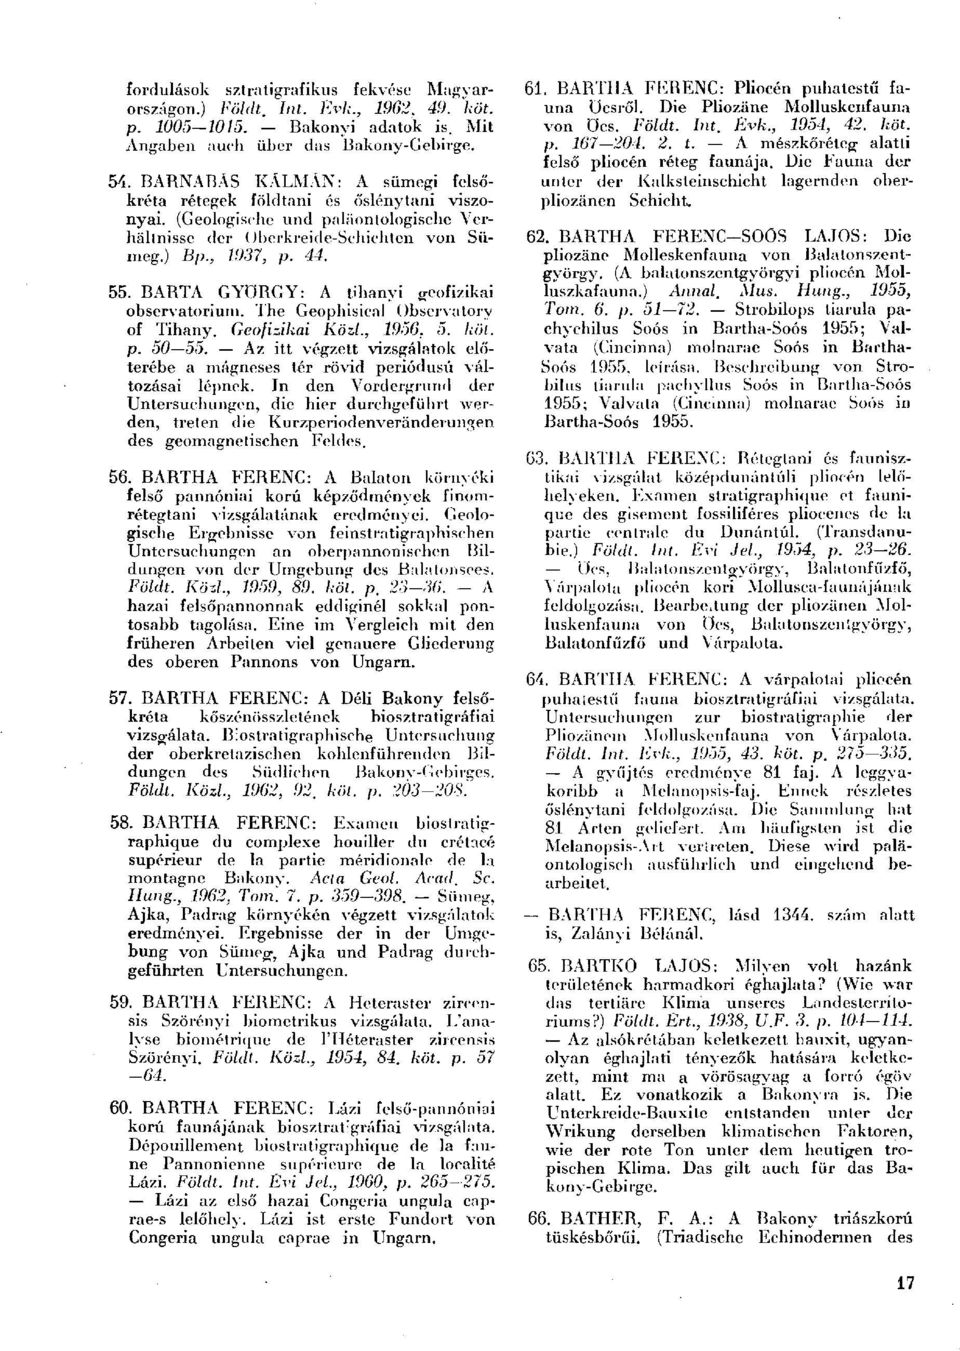 BARTA GYÖRGY: A tihanyi geofizikai Observatorium. The Geophisical Observatory of Tihany. Geofizikai Közl., 1956, 5. köt. p. 50 55.